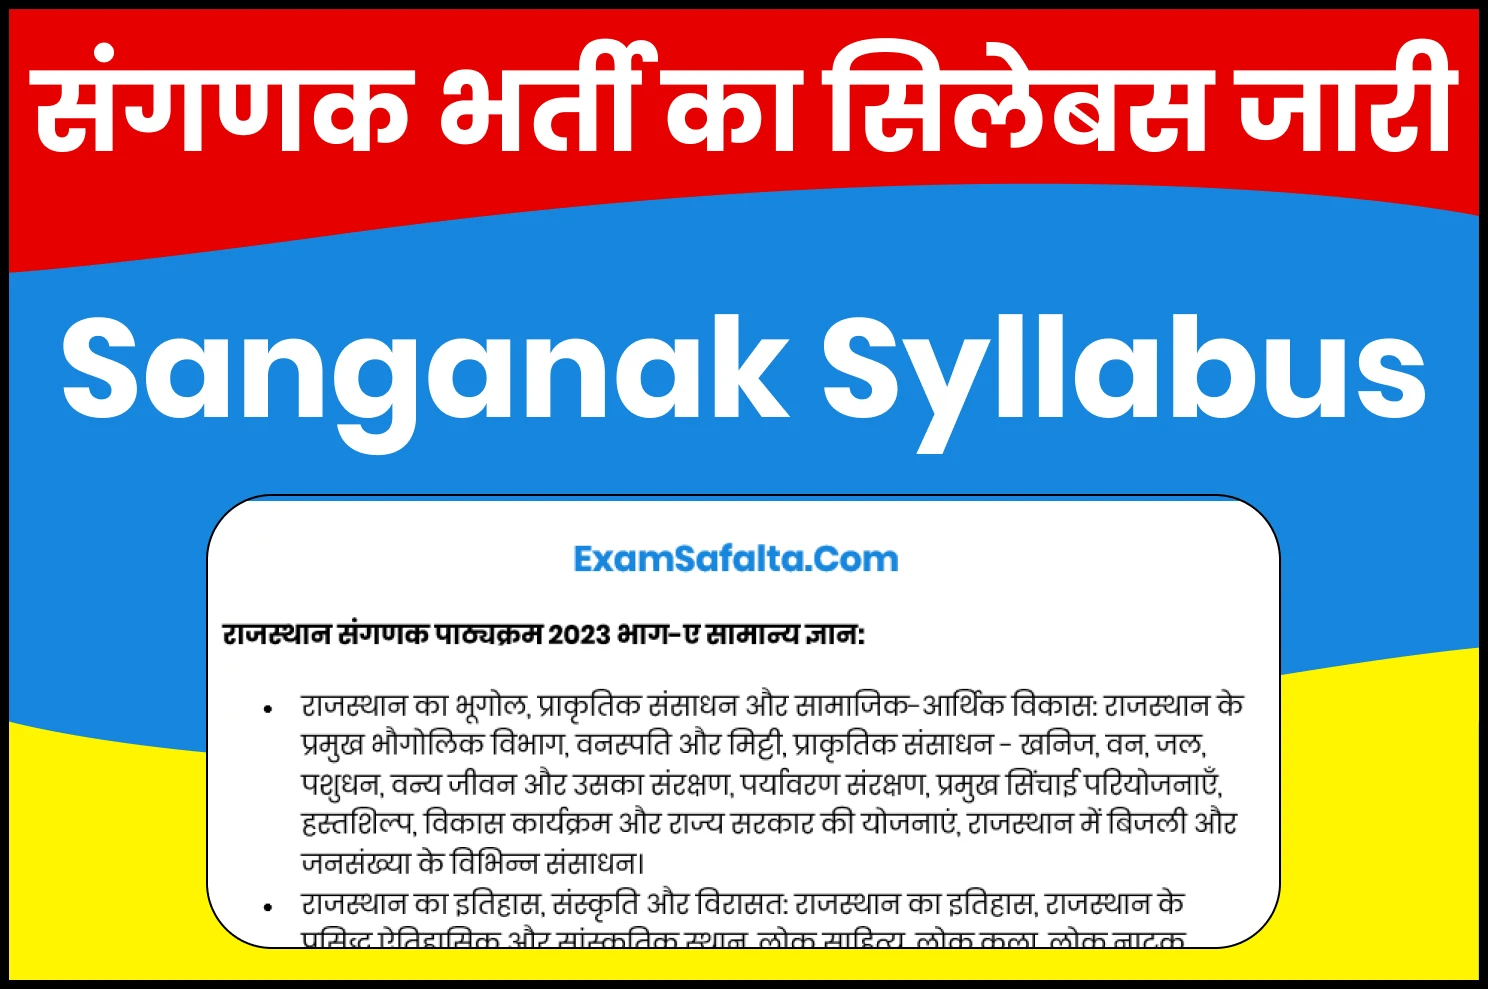 Rajasthan Sanganak Syllabus 2023 in Hindi